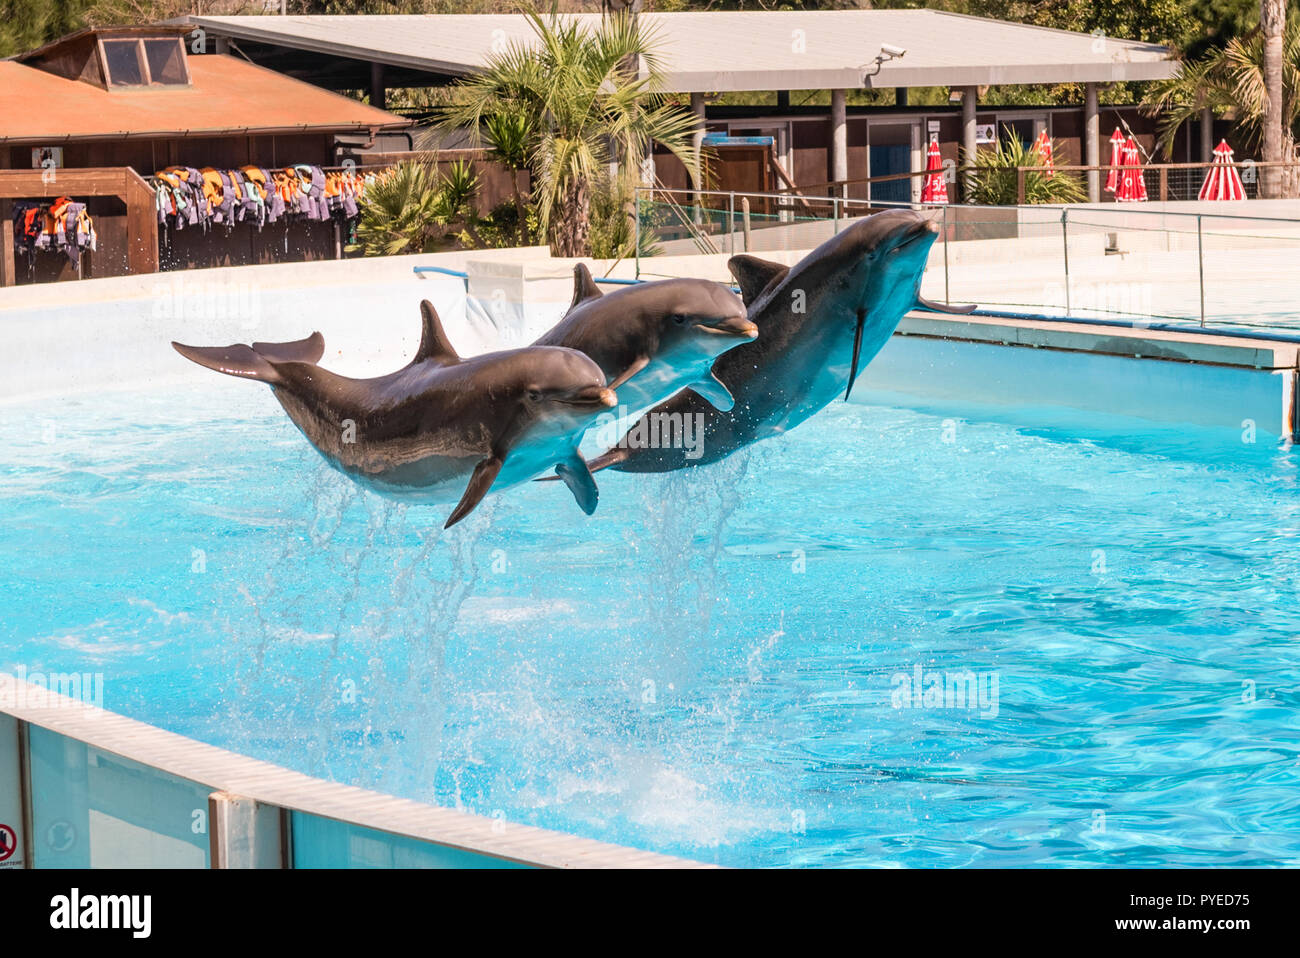 Trois beaux dauphins sautant dans une piscine montrant leurs capacités acrobatiques Banque D'Images